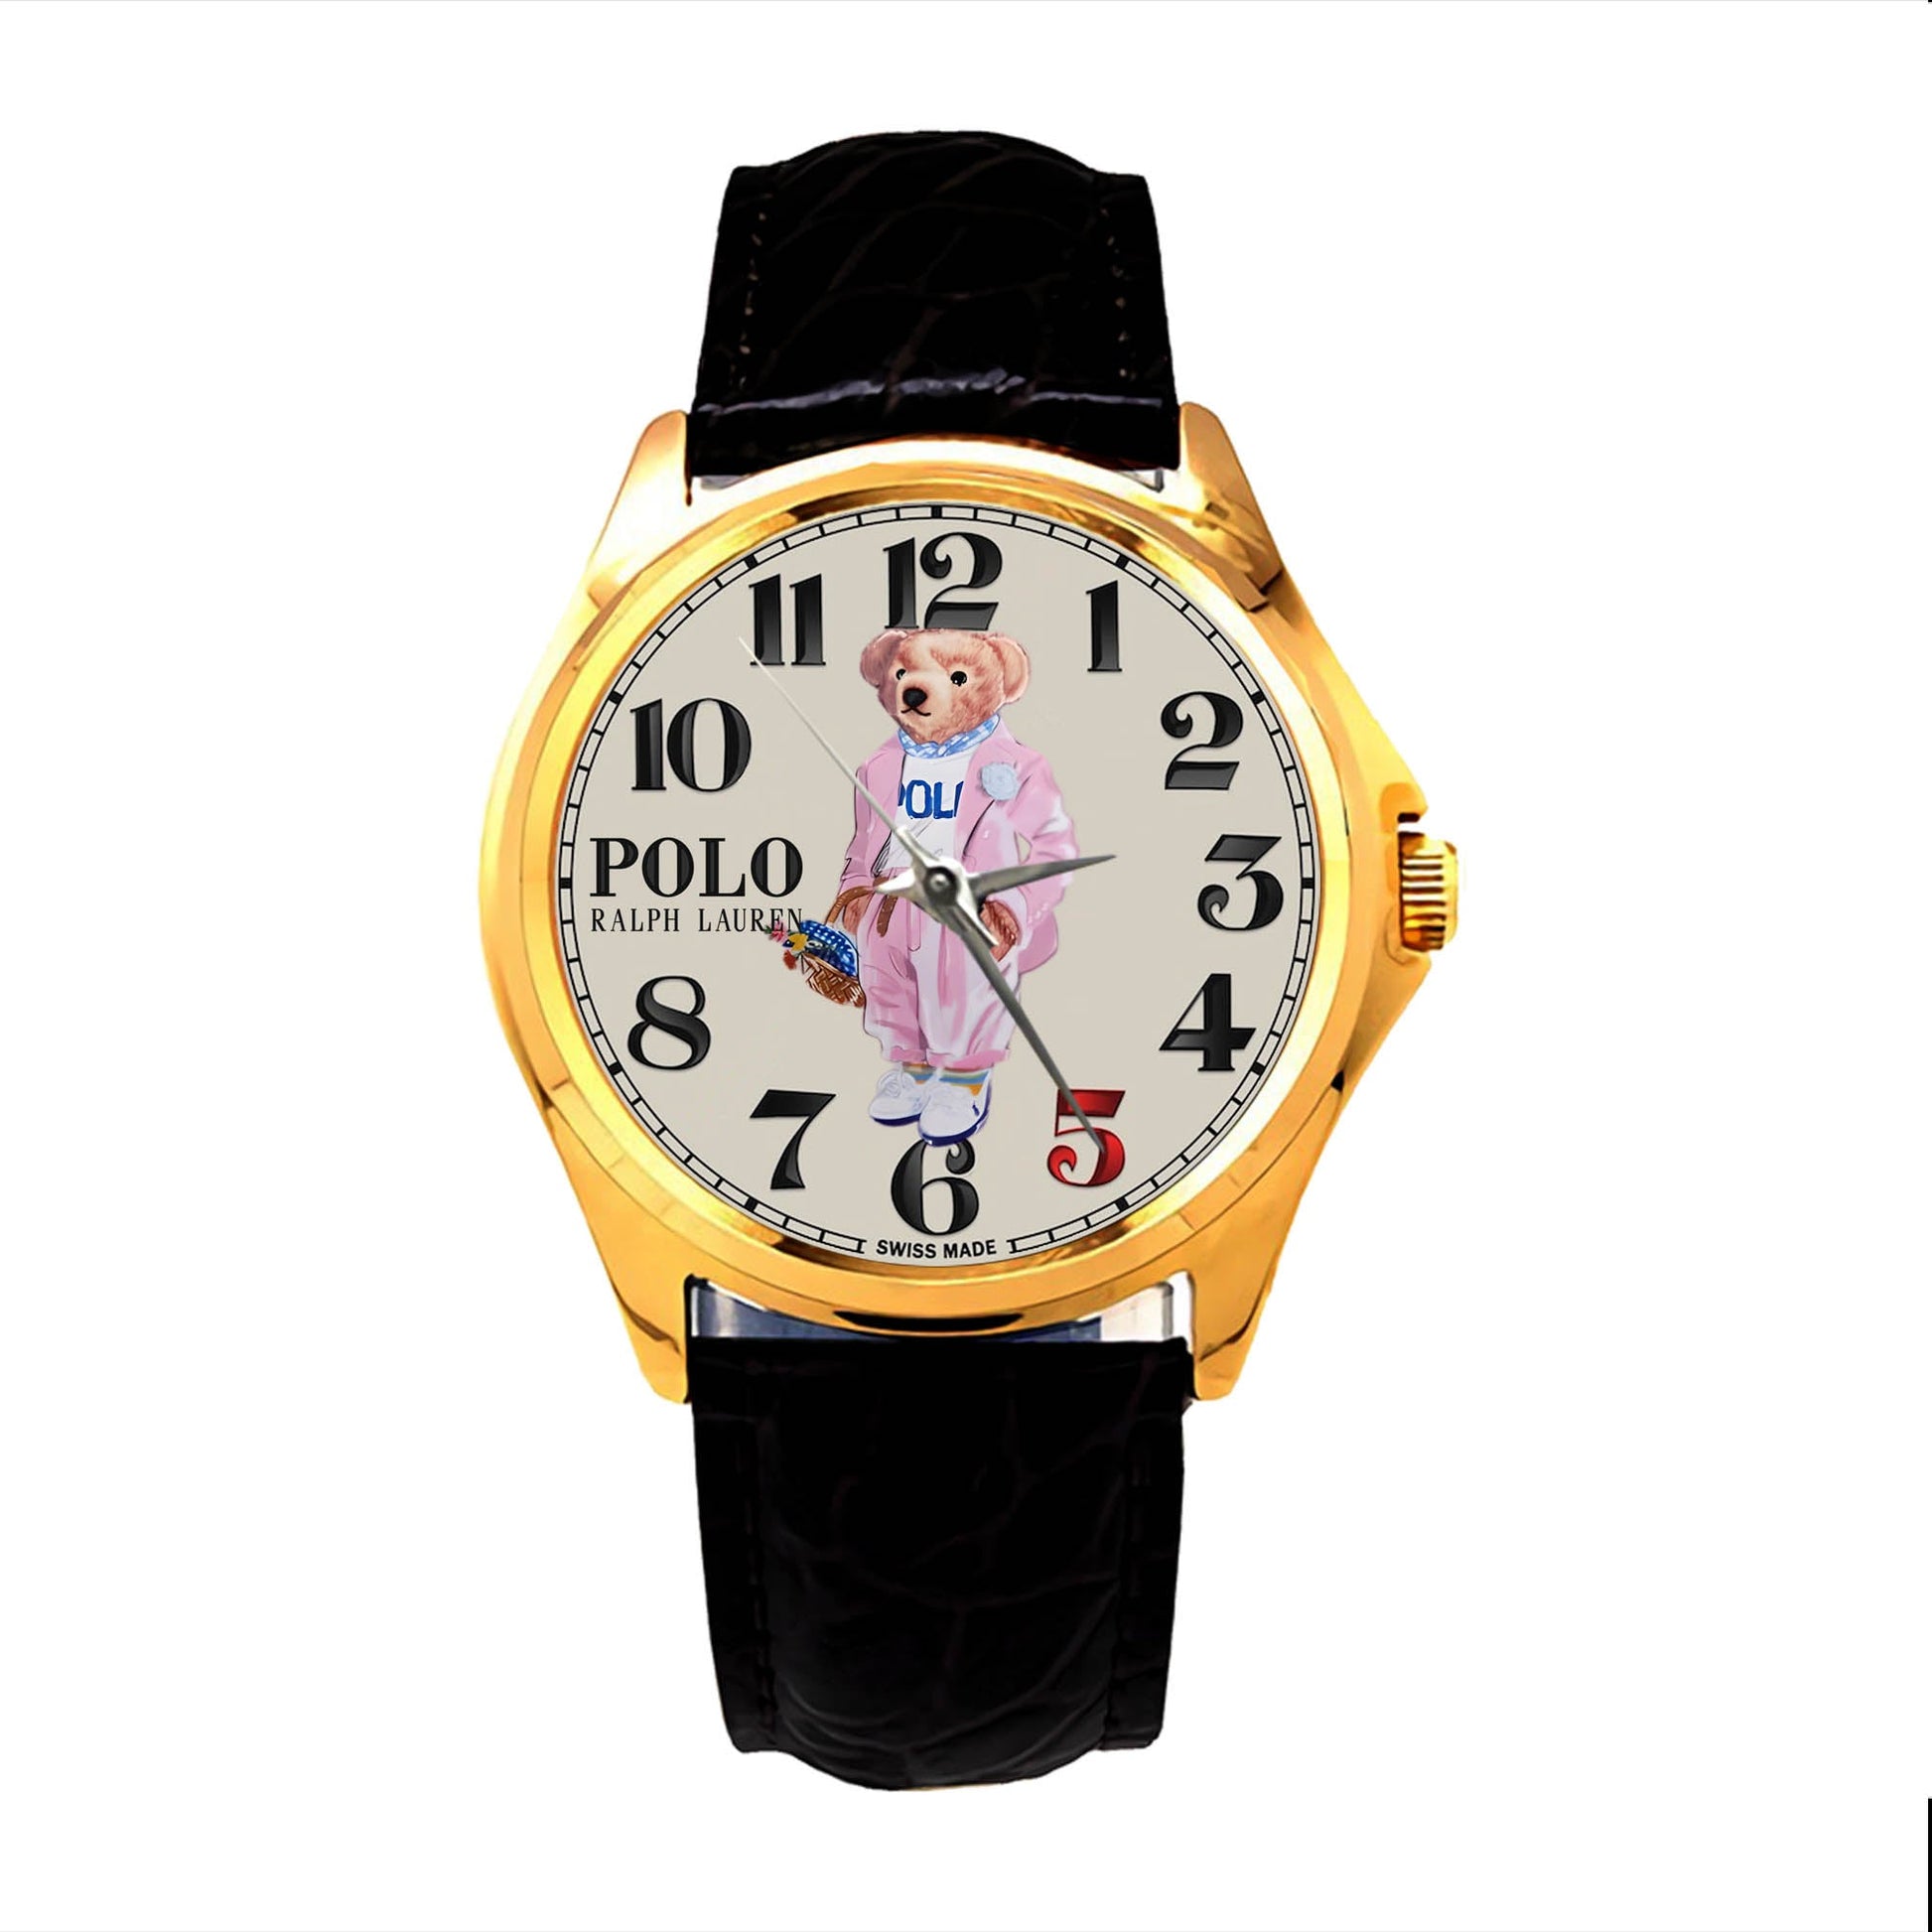 Ralph Lauren's Polo Bear Watches KP612